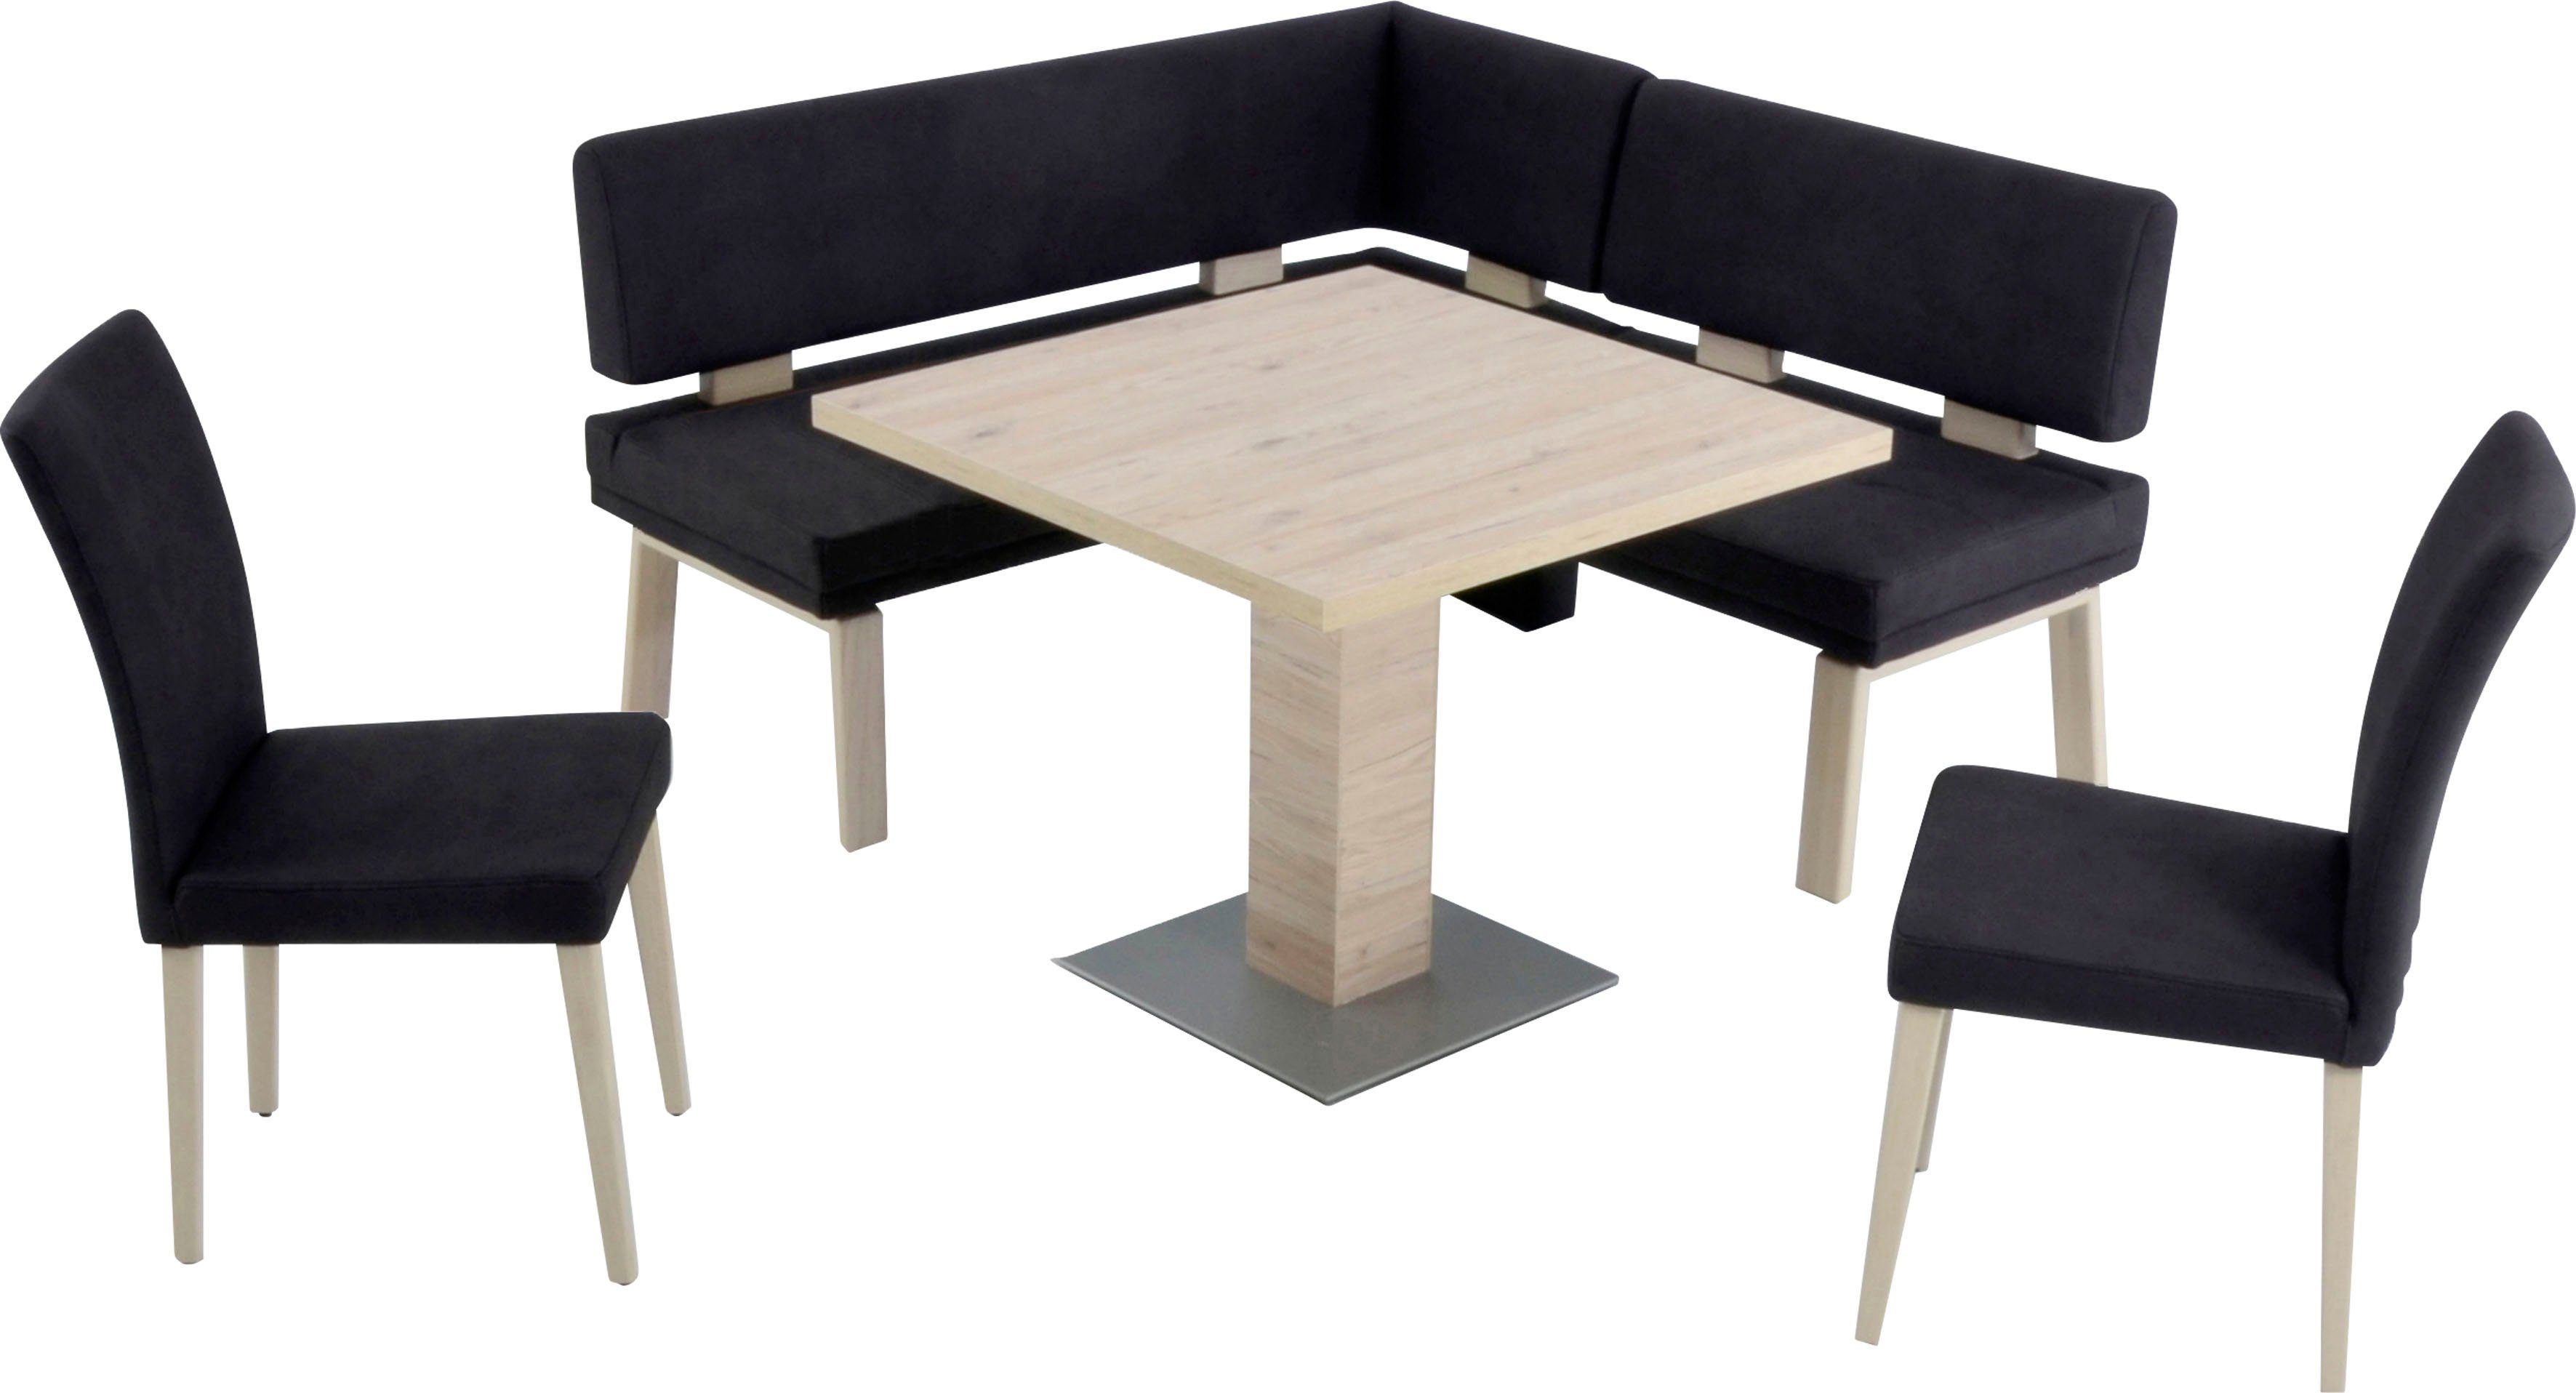 K+W Komfort & darkbrown 4-Fußholzstühle Tisch Eiche und Eckbankgruppe I, Santos 157cm, zwei Wohnen gleichschenklig 90x90cm